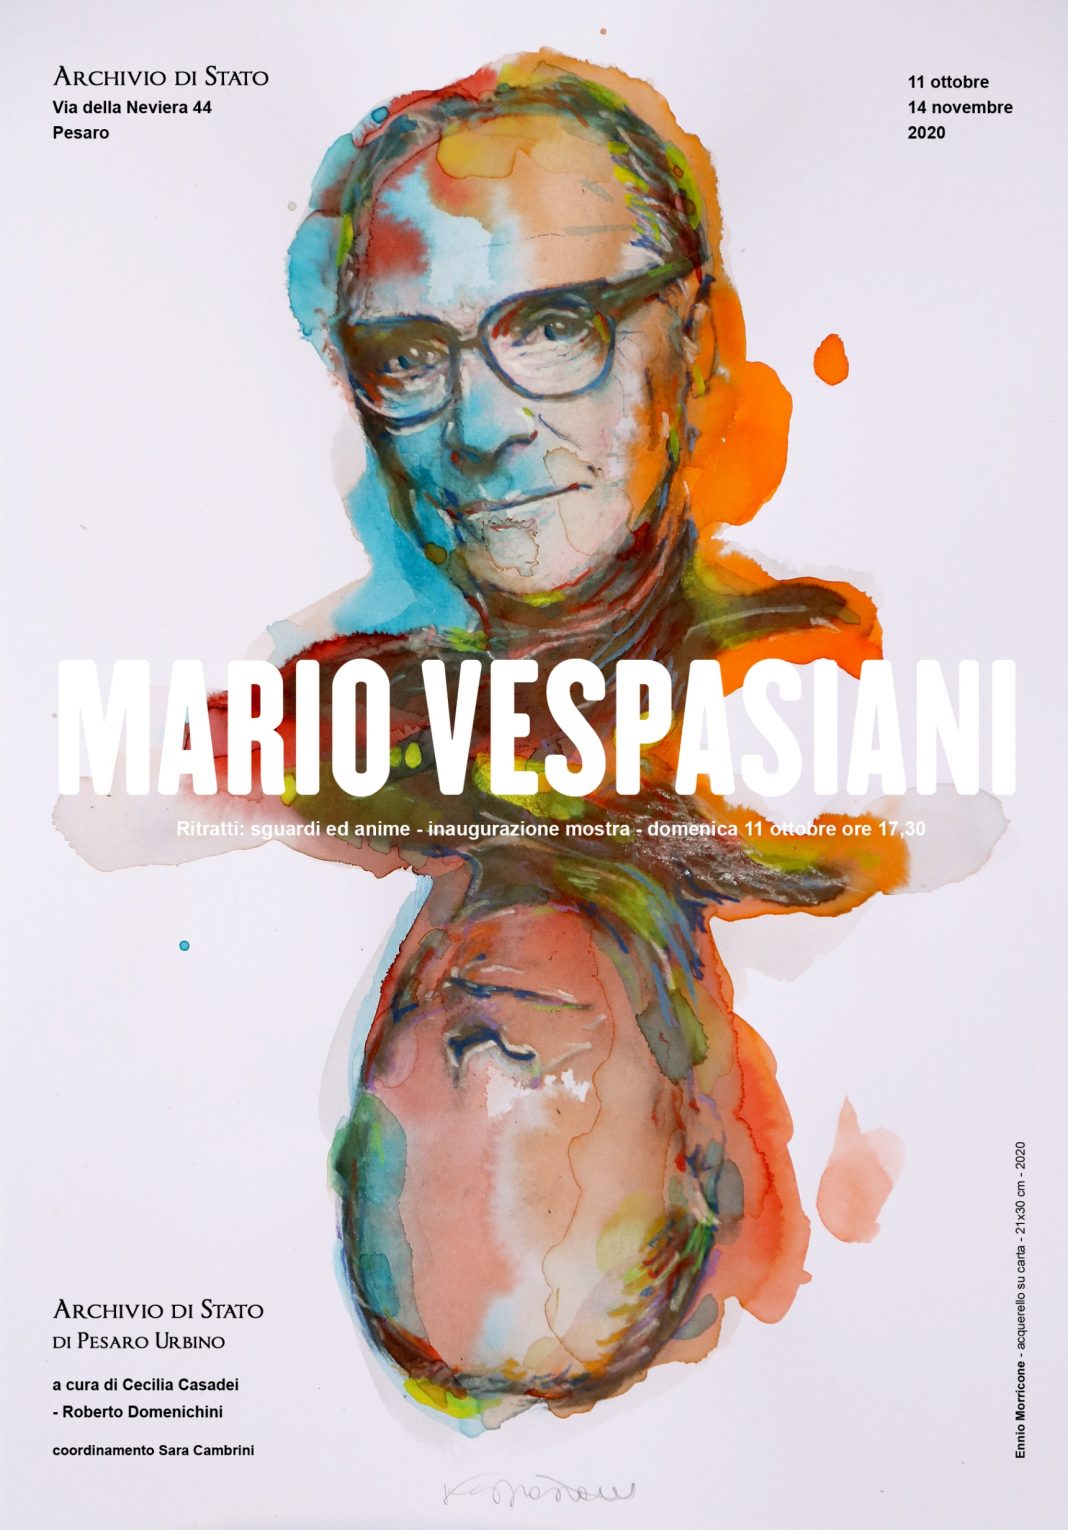 Mario Vespasiani – Ritratti di sguardi ed animehttps://www.exibart.com/repository/media/formidable/11/Locandina-Vespasiani-ridimensionata-1068x1530.jpg